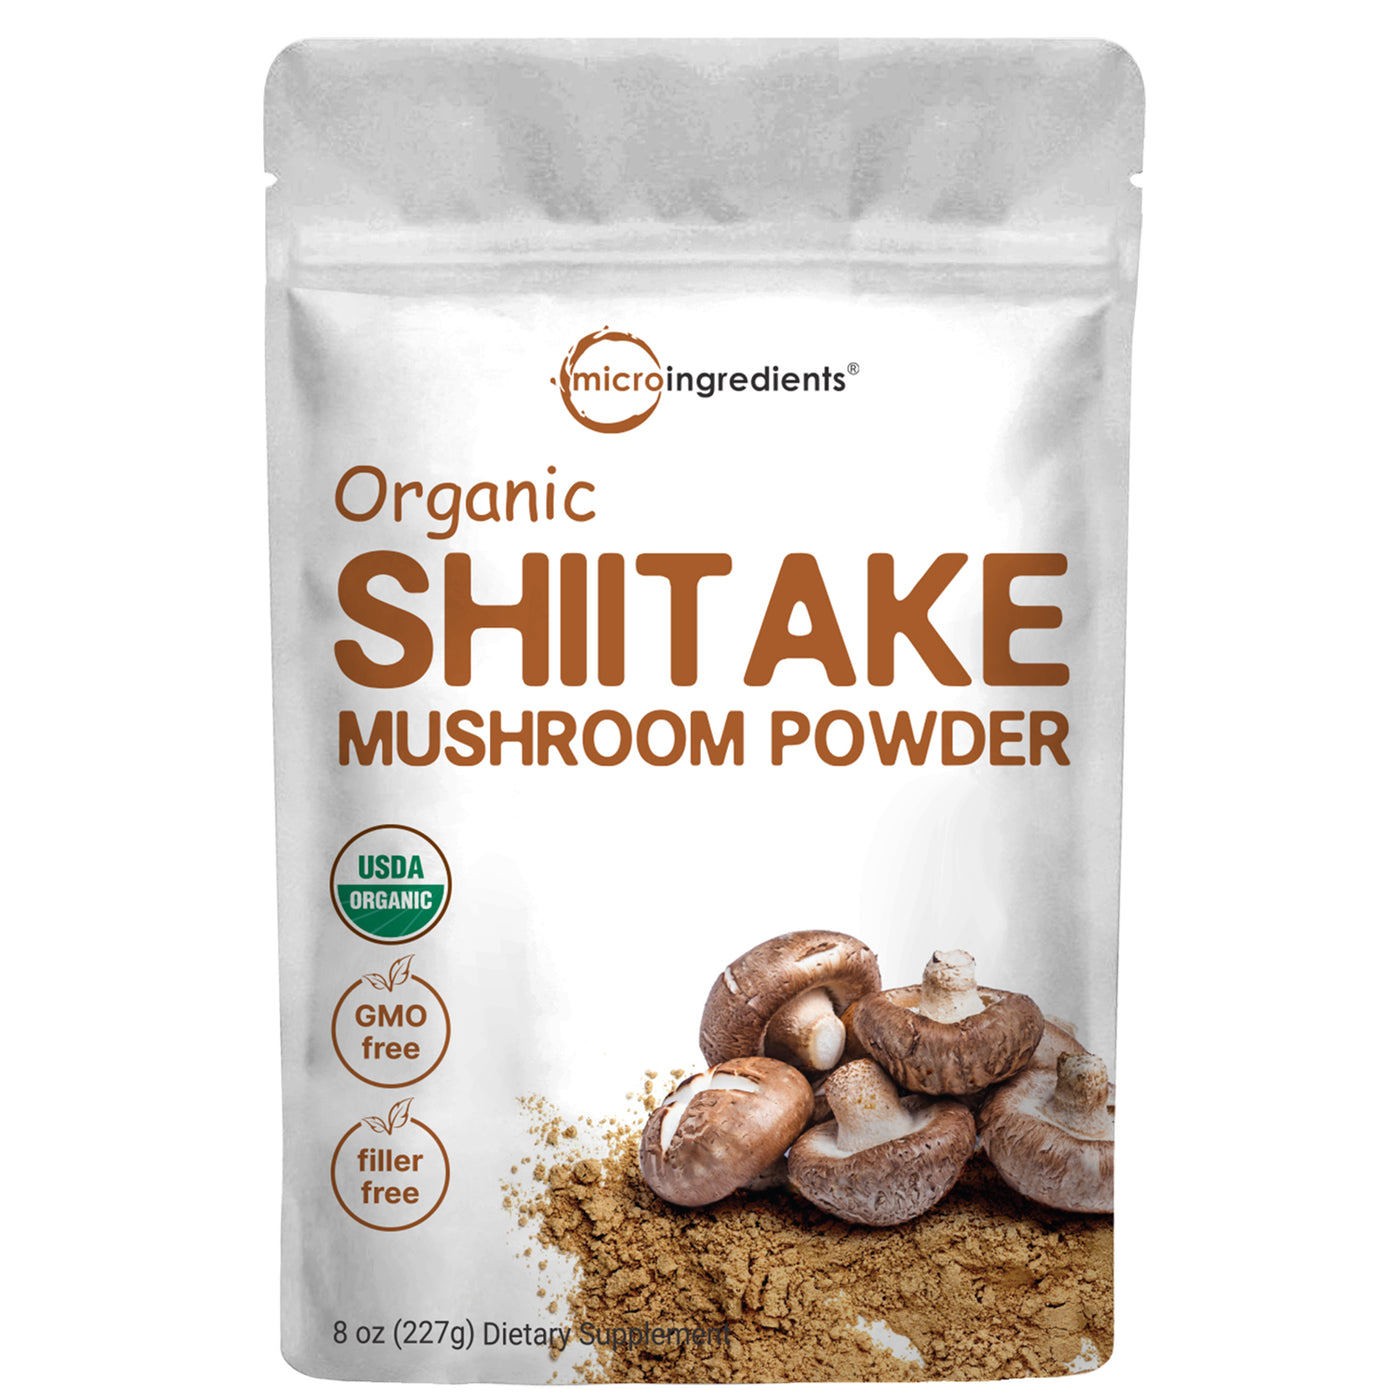 Organic Shiitake Mushroom Powder, 8oz